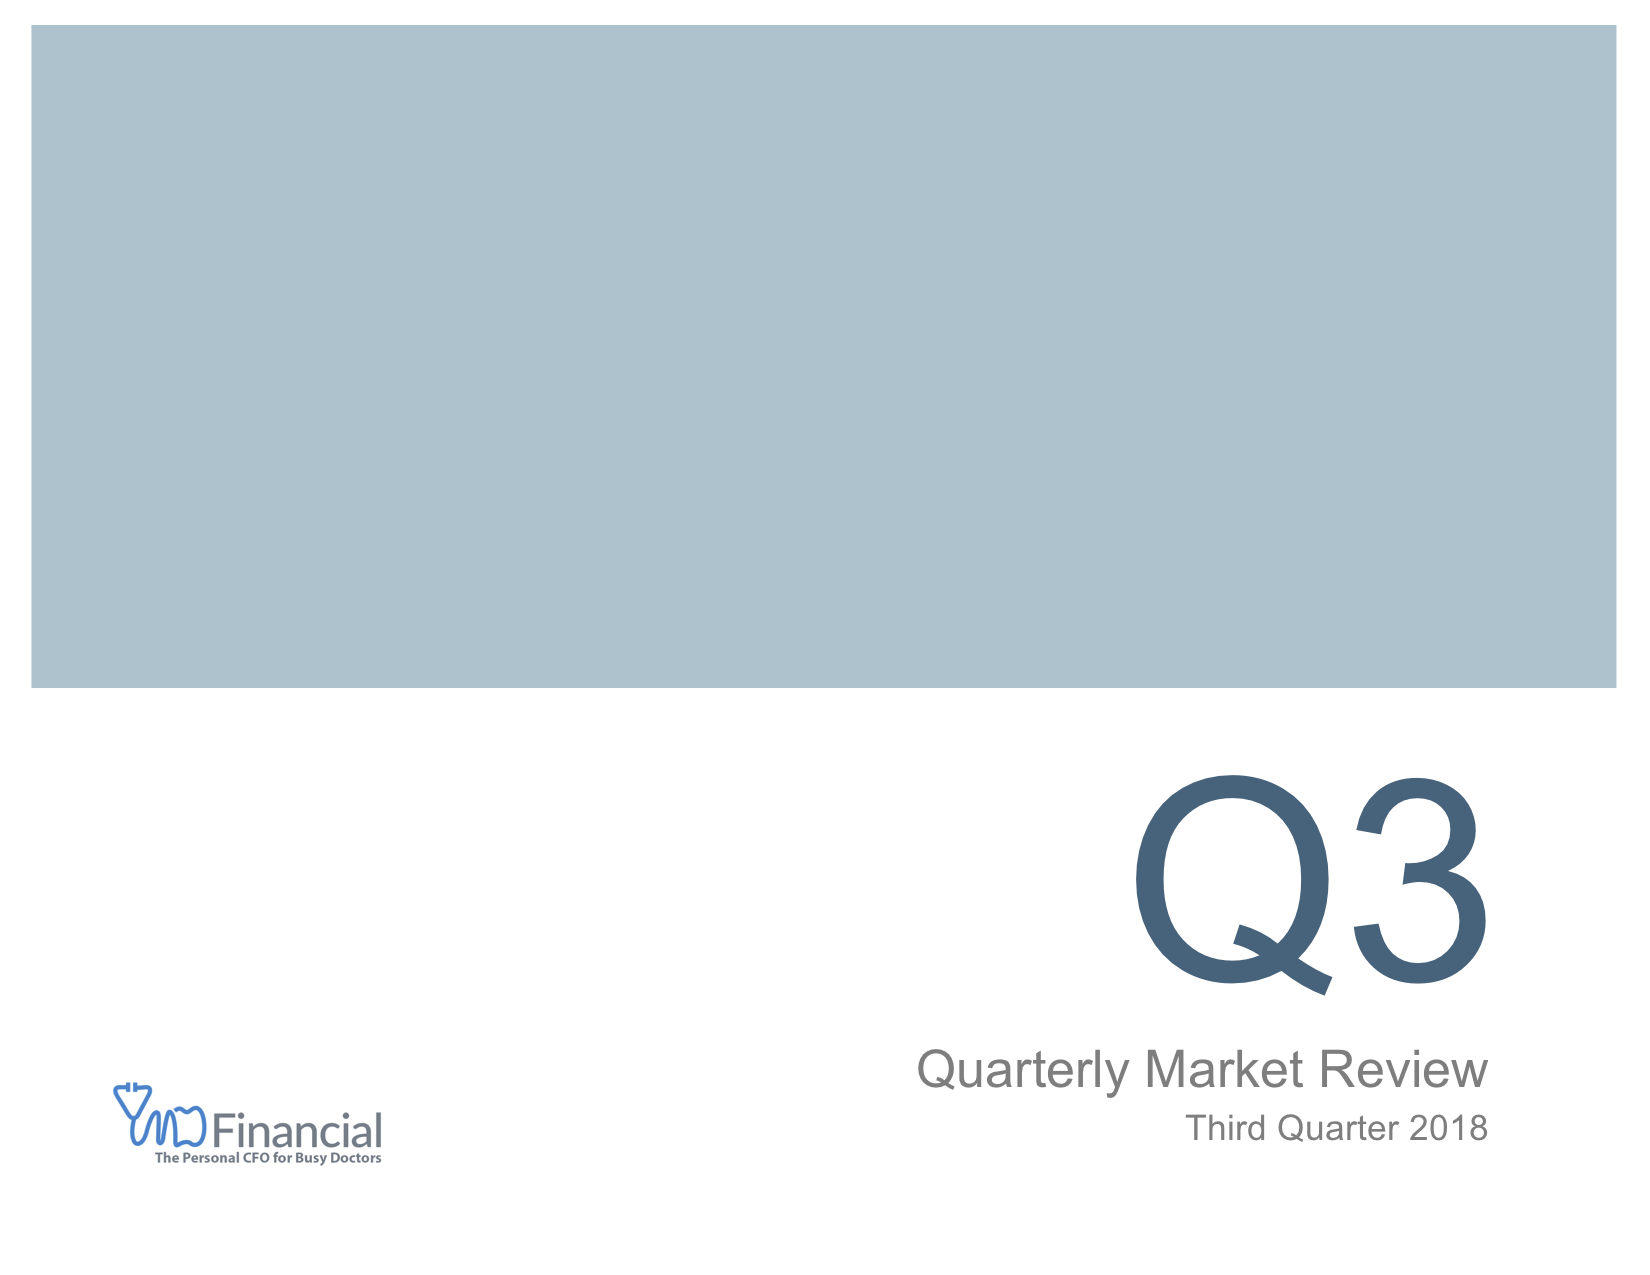 Quarterly Market Review with logo(QMR) - Q3 2018 (Landscape version).png